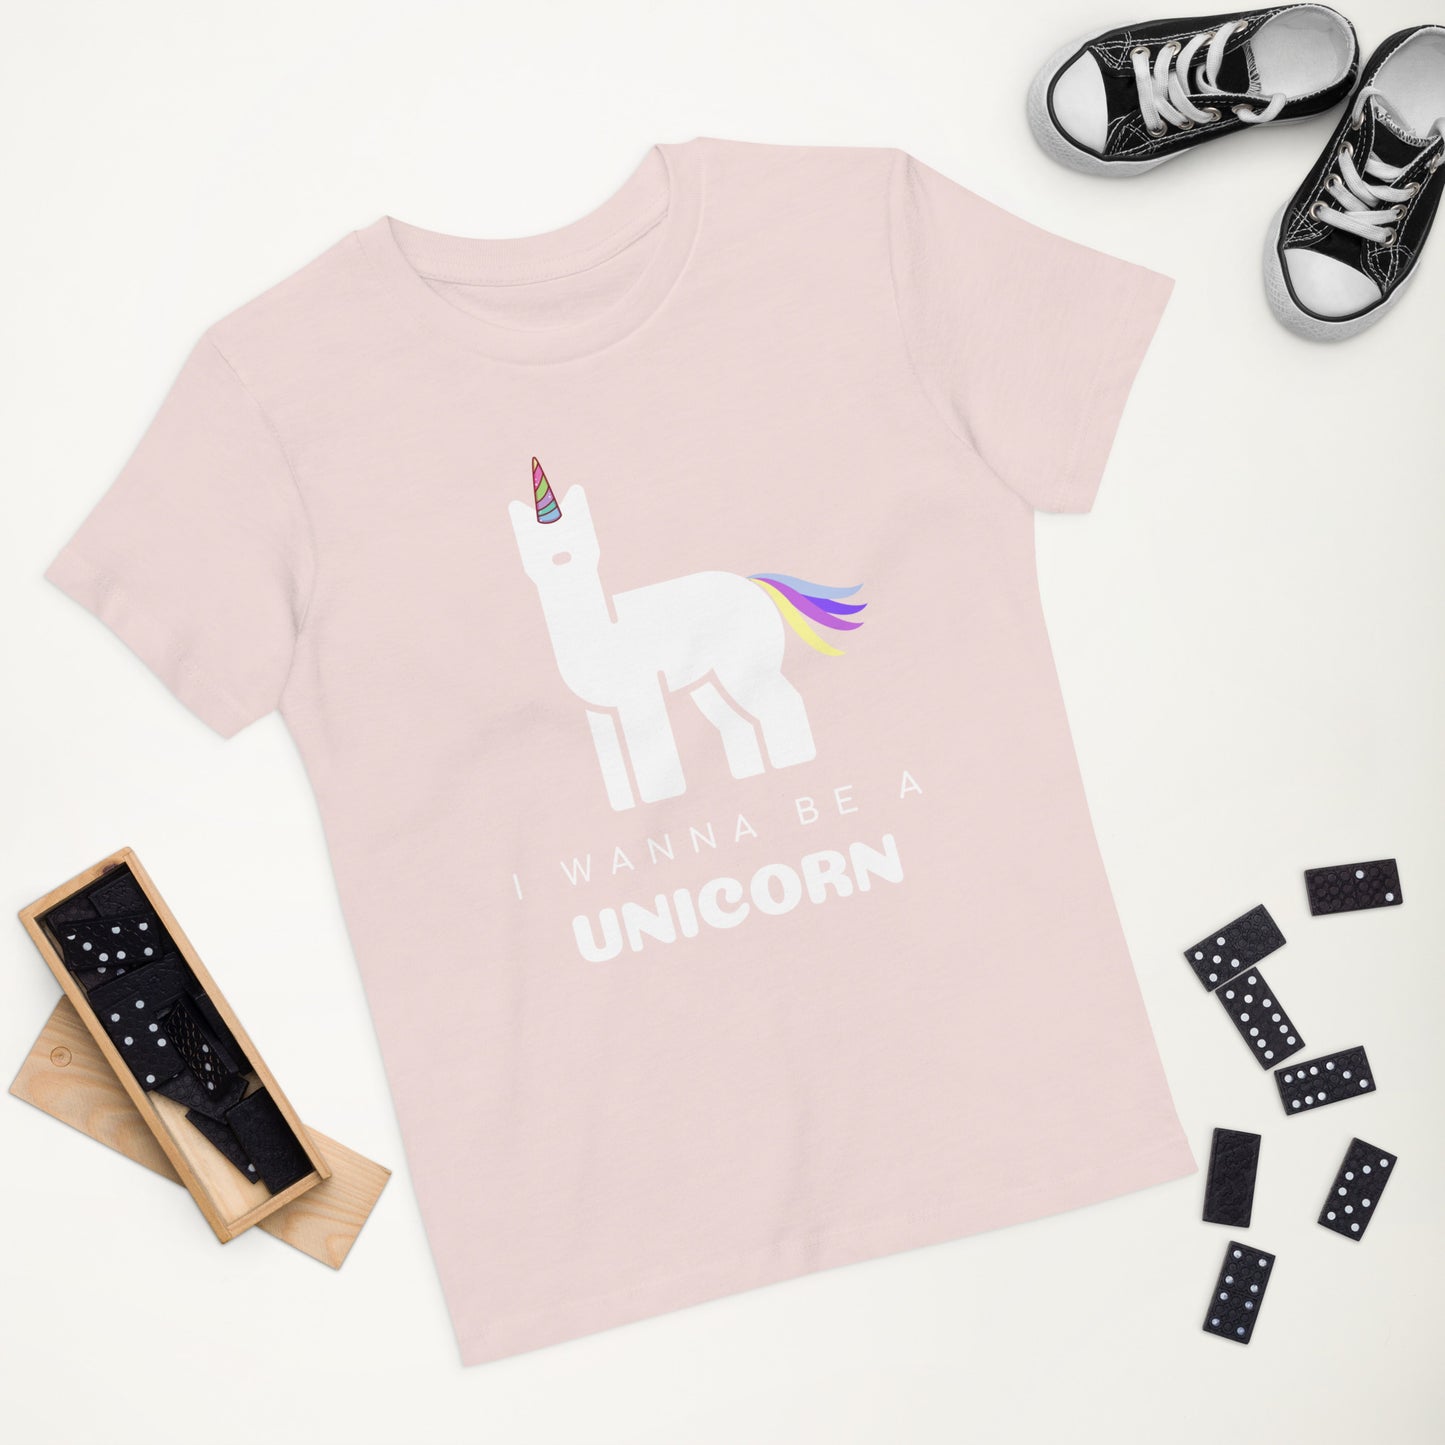 Unicorn Wanna Be Organic Cotton KidsT-shirt